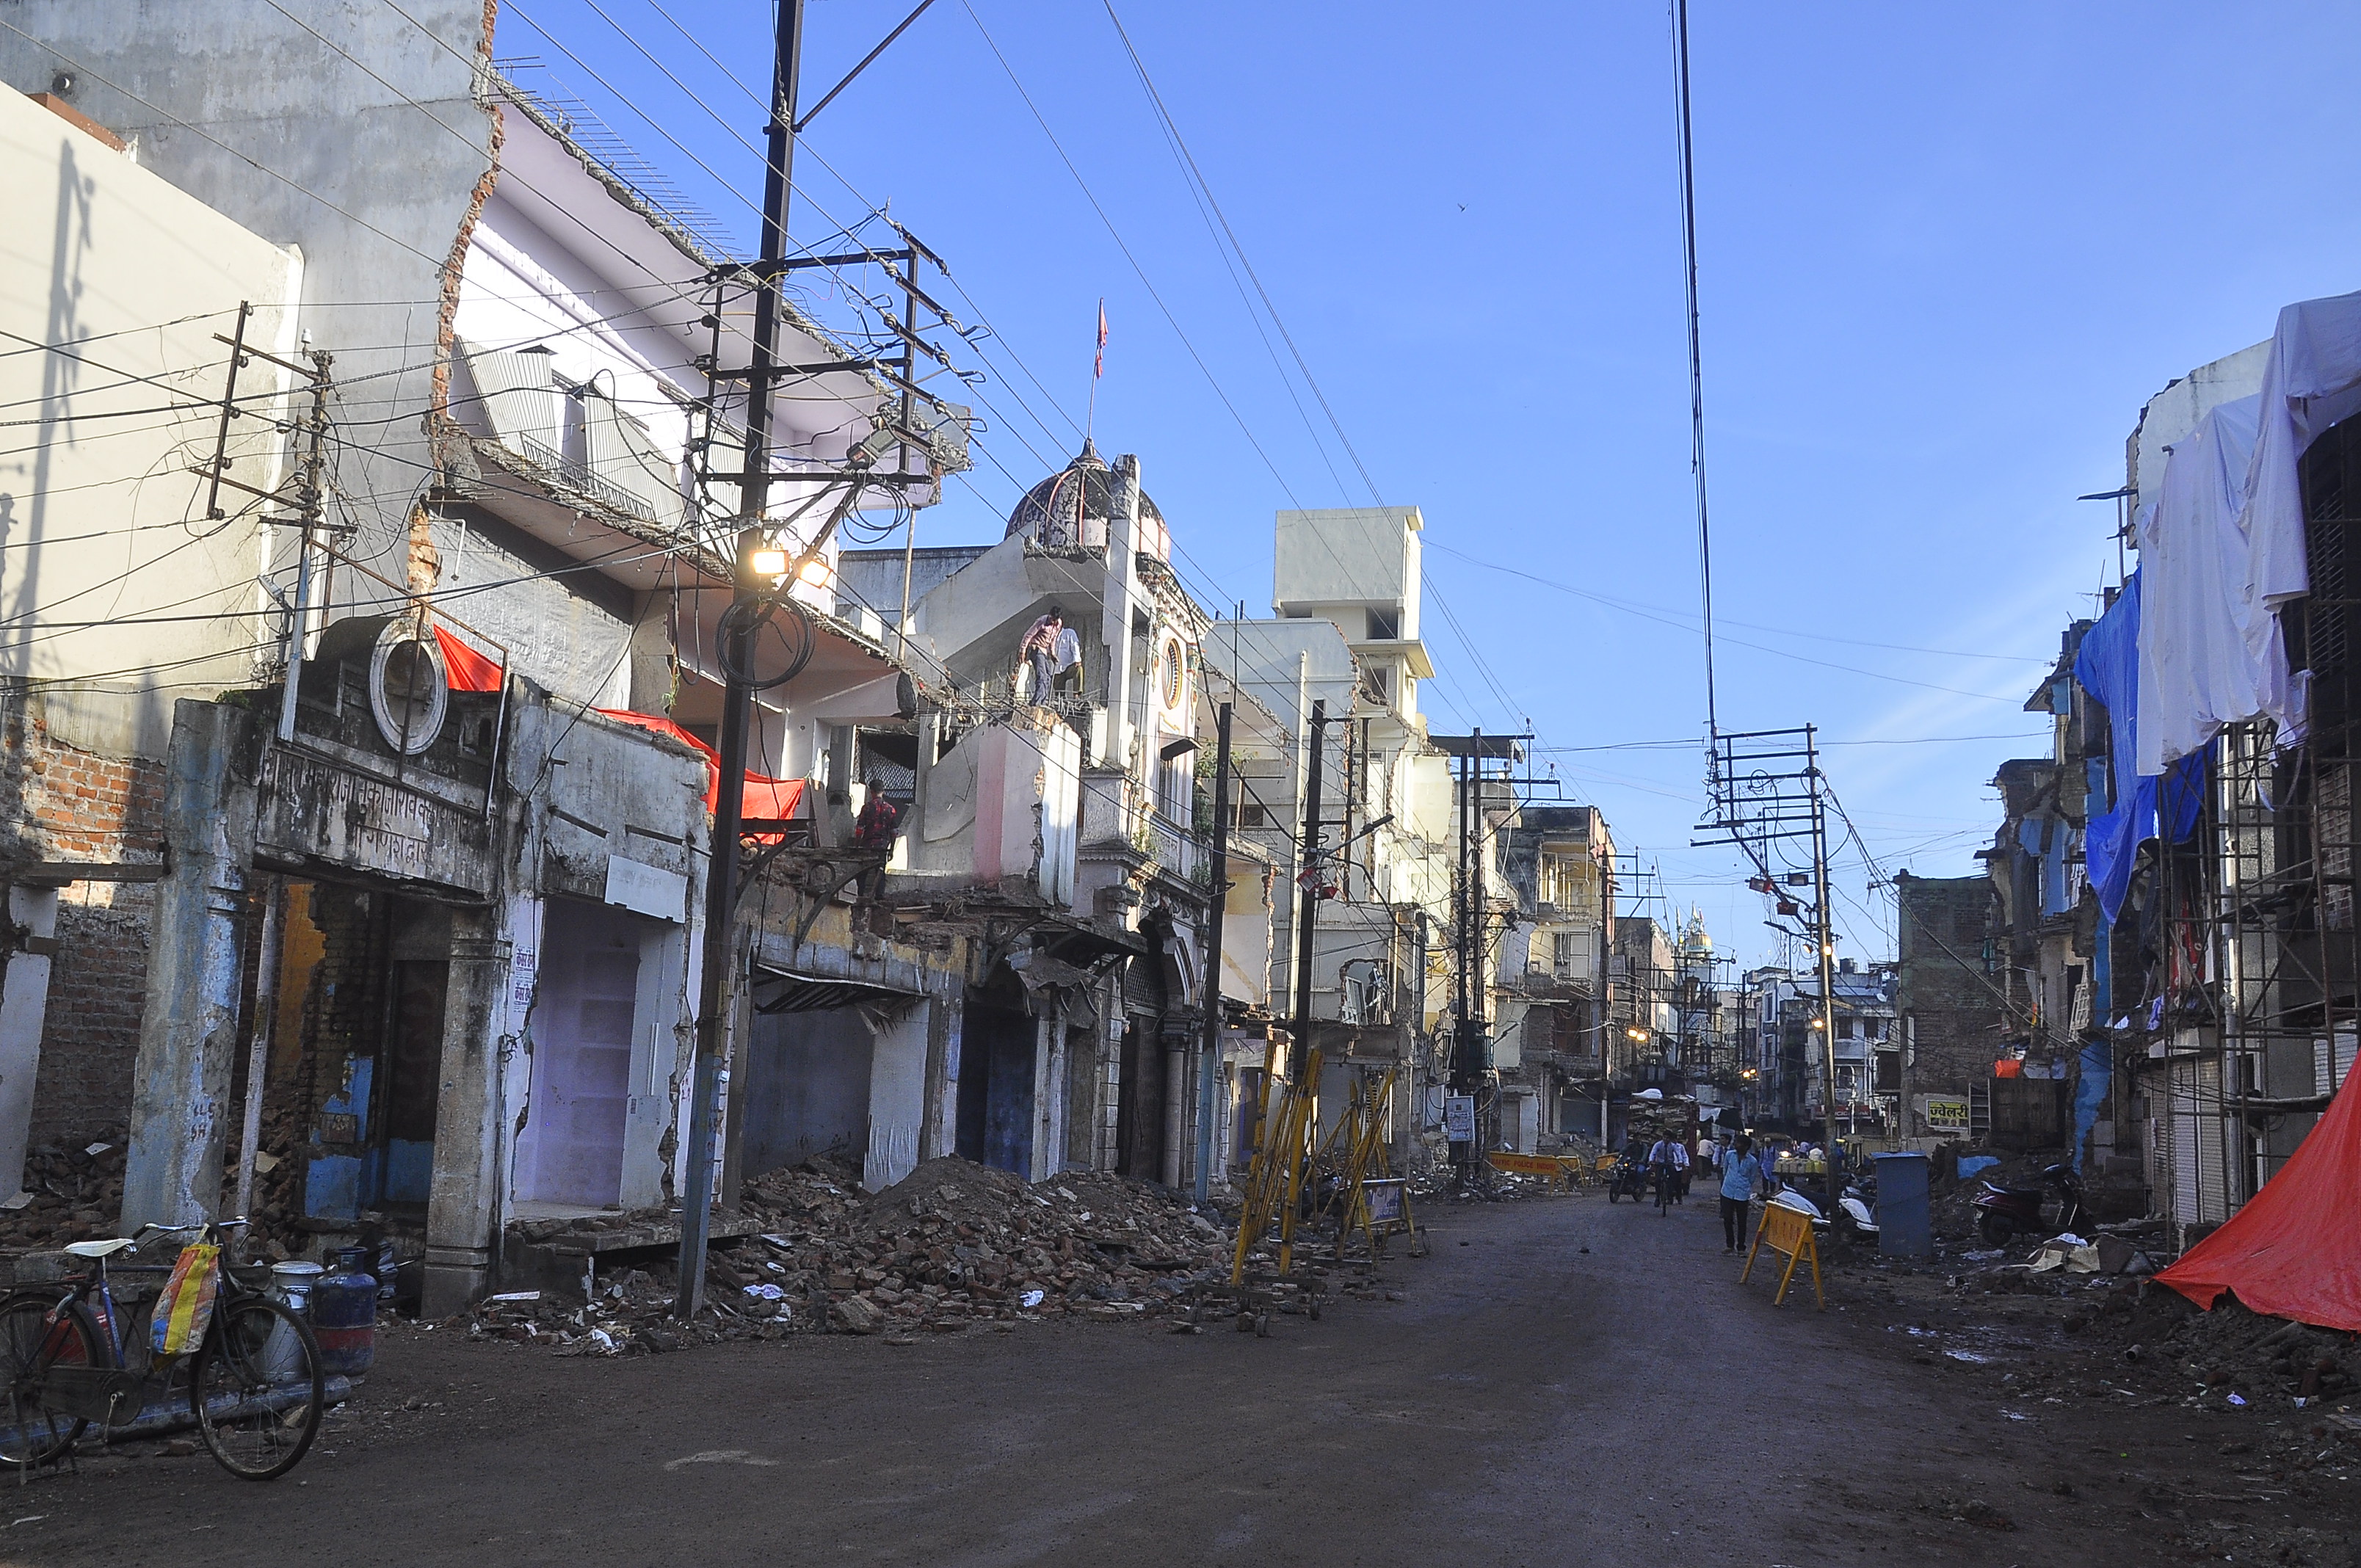 Smart City Road : सीतलामाता बाजार में बचे मकानों-दुकानों पर चलेगी जेसीबी